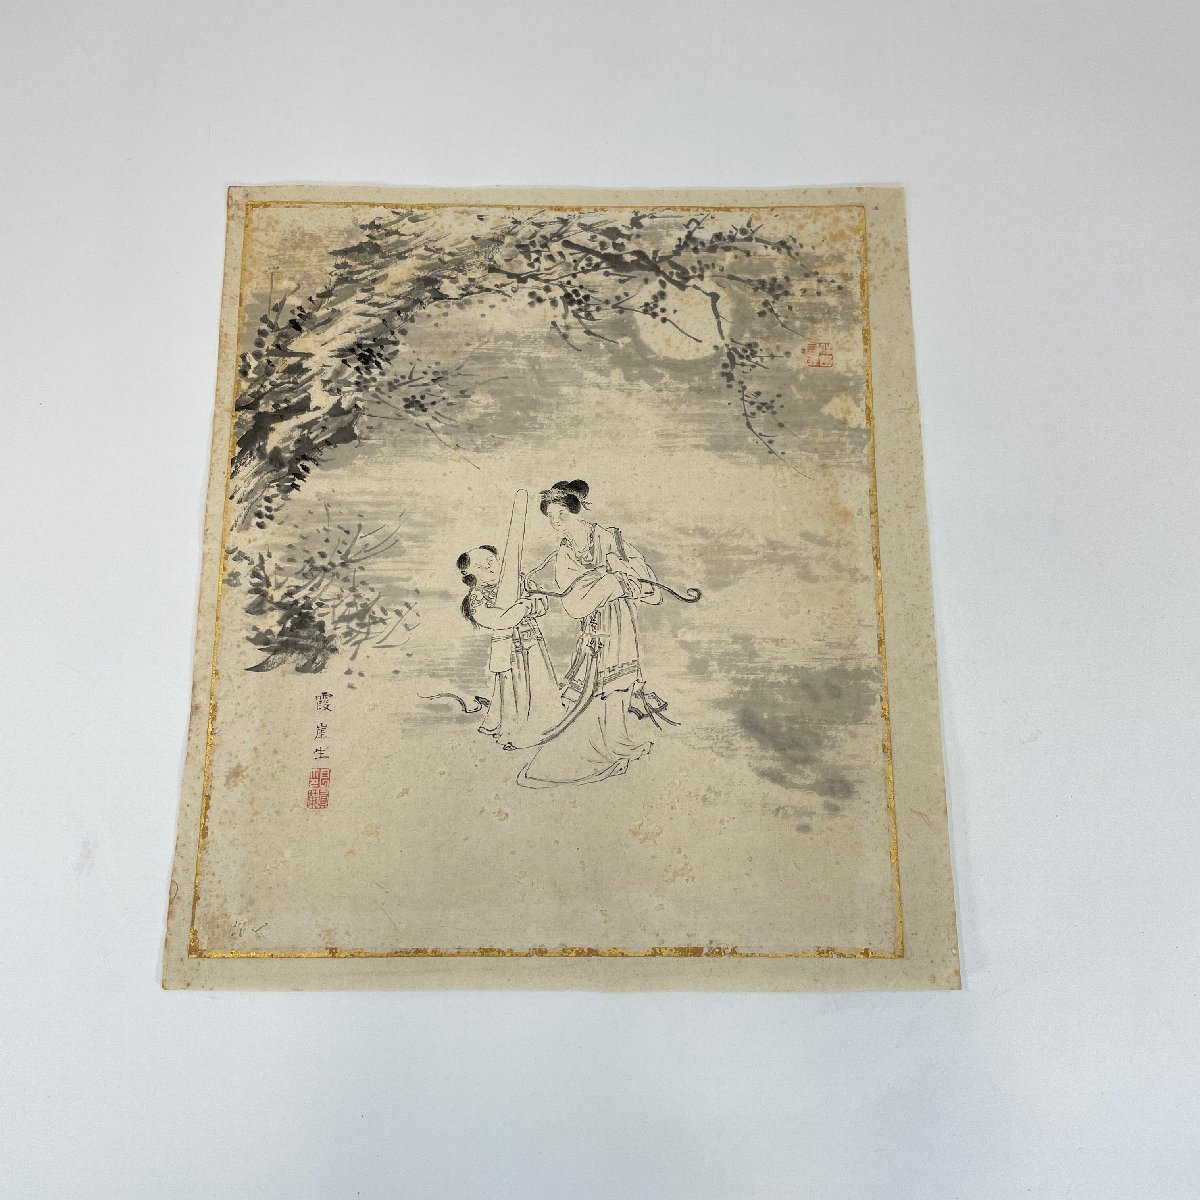 ER-60 [कासुमीगई] चीनी शैली की देवदूत आकृति पेंटिंग, हाथ से पेंट किया हुआ, पुरानी किताब, एंटीक, हस्ताक्षर, कलाकार का काम, चित्रकारी, जापानी चित्रकला, व्यक्ति, बोधिसत्त्व